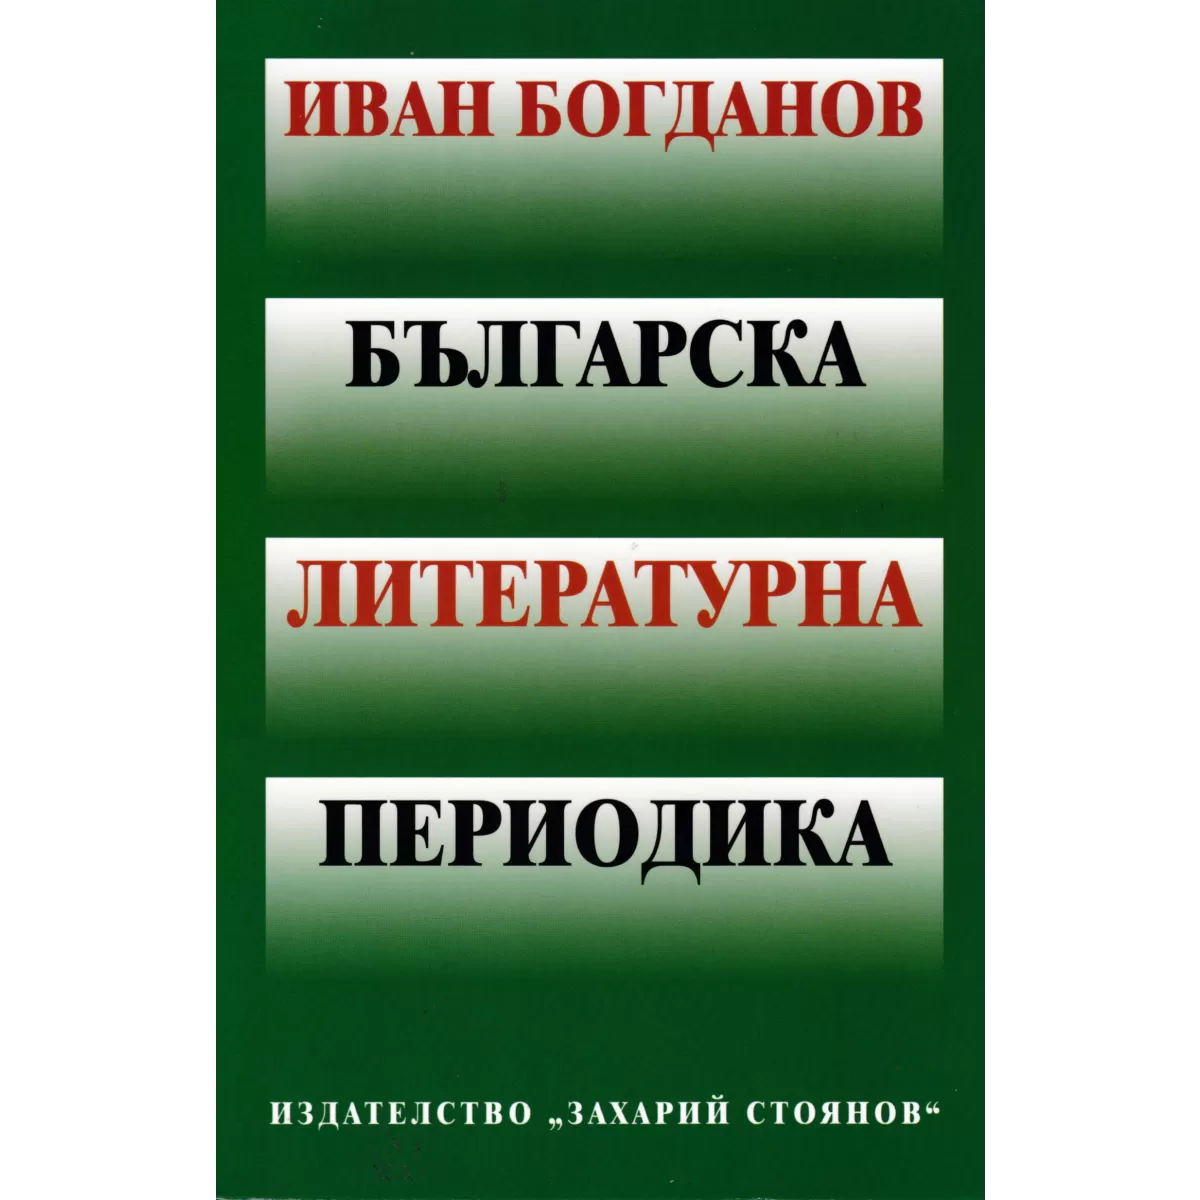 Българска литературна периодика – иван богданов